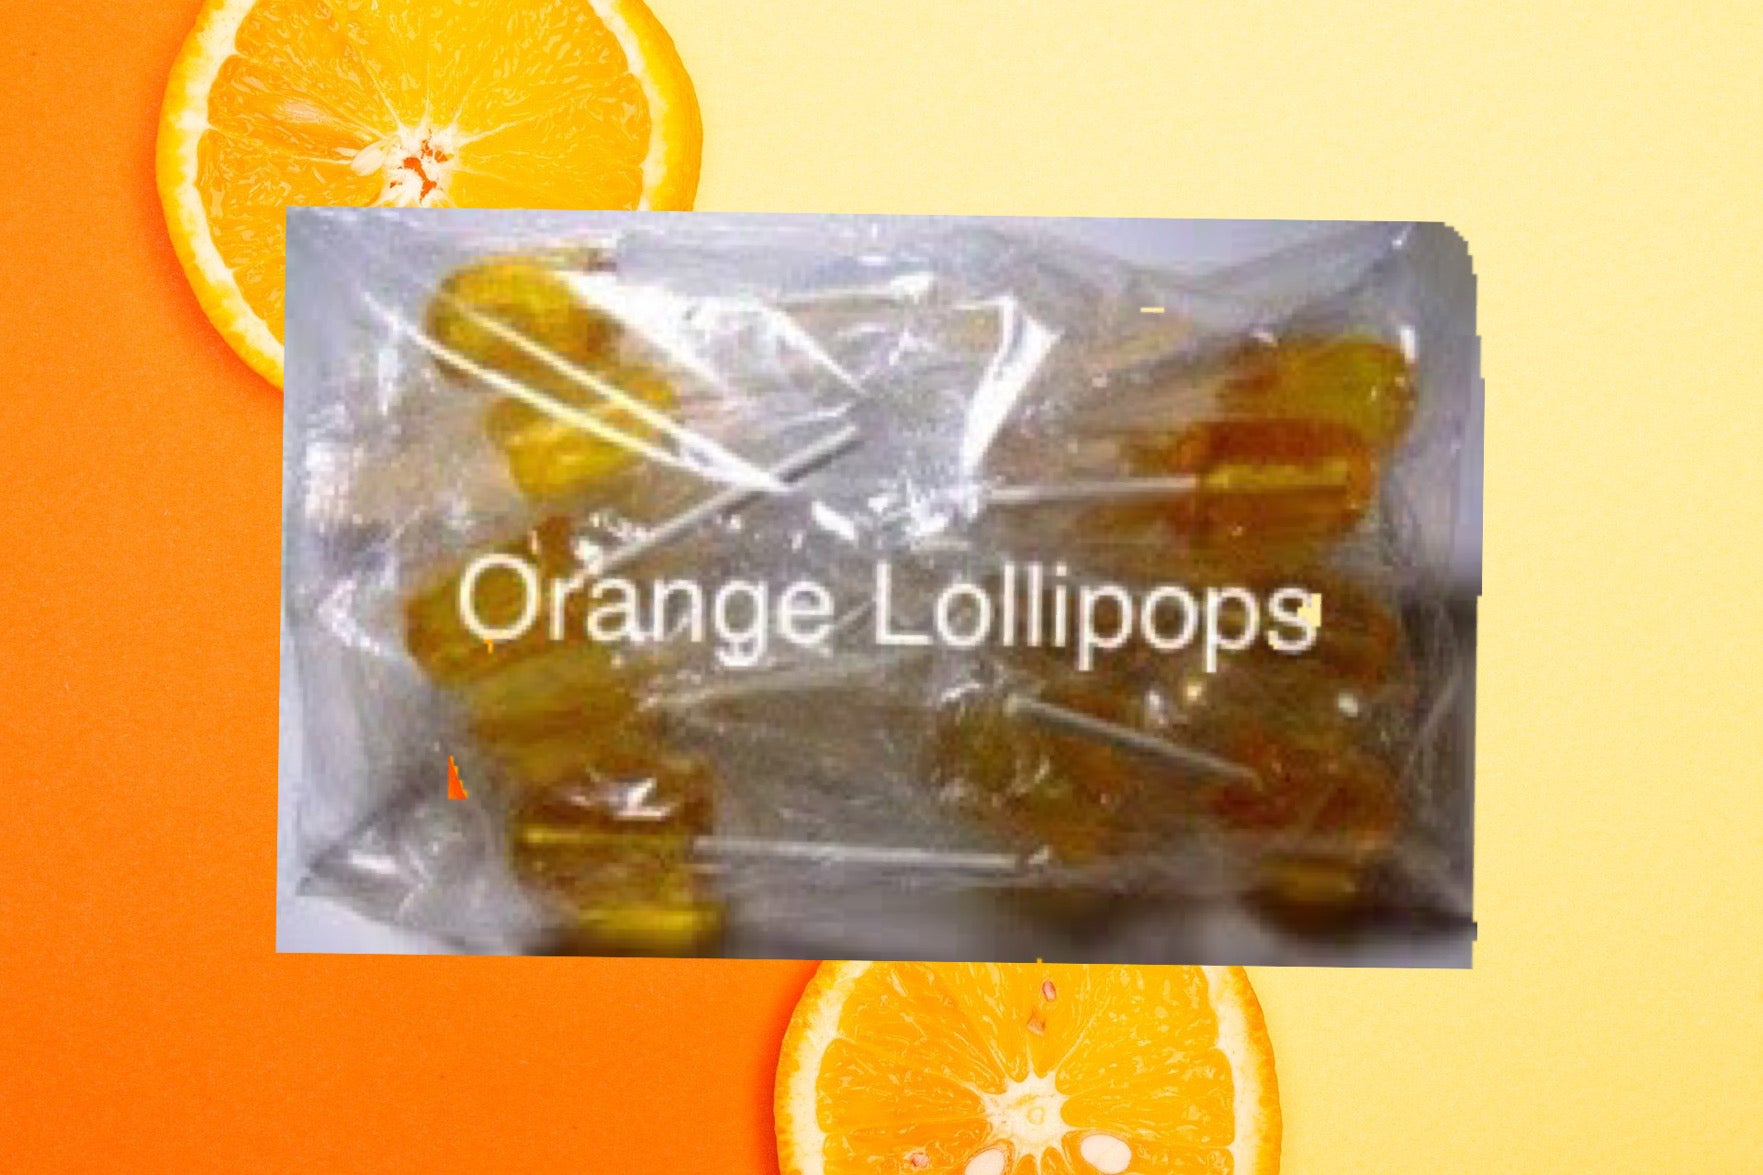 Pilones  De China (Orange Lollipops)